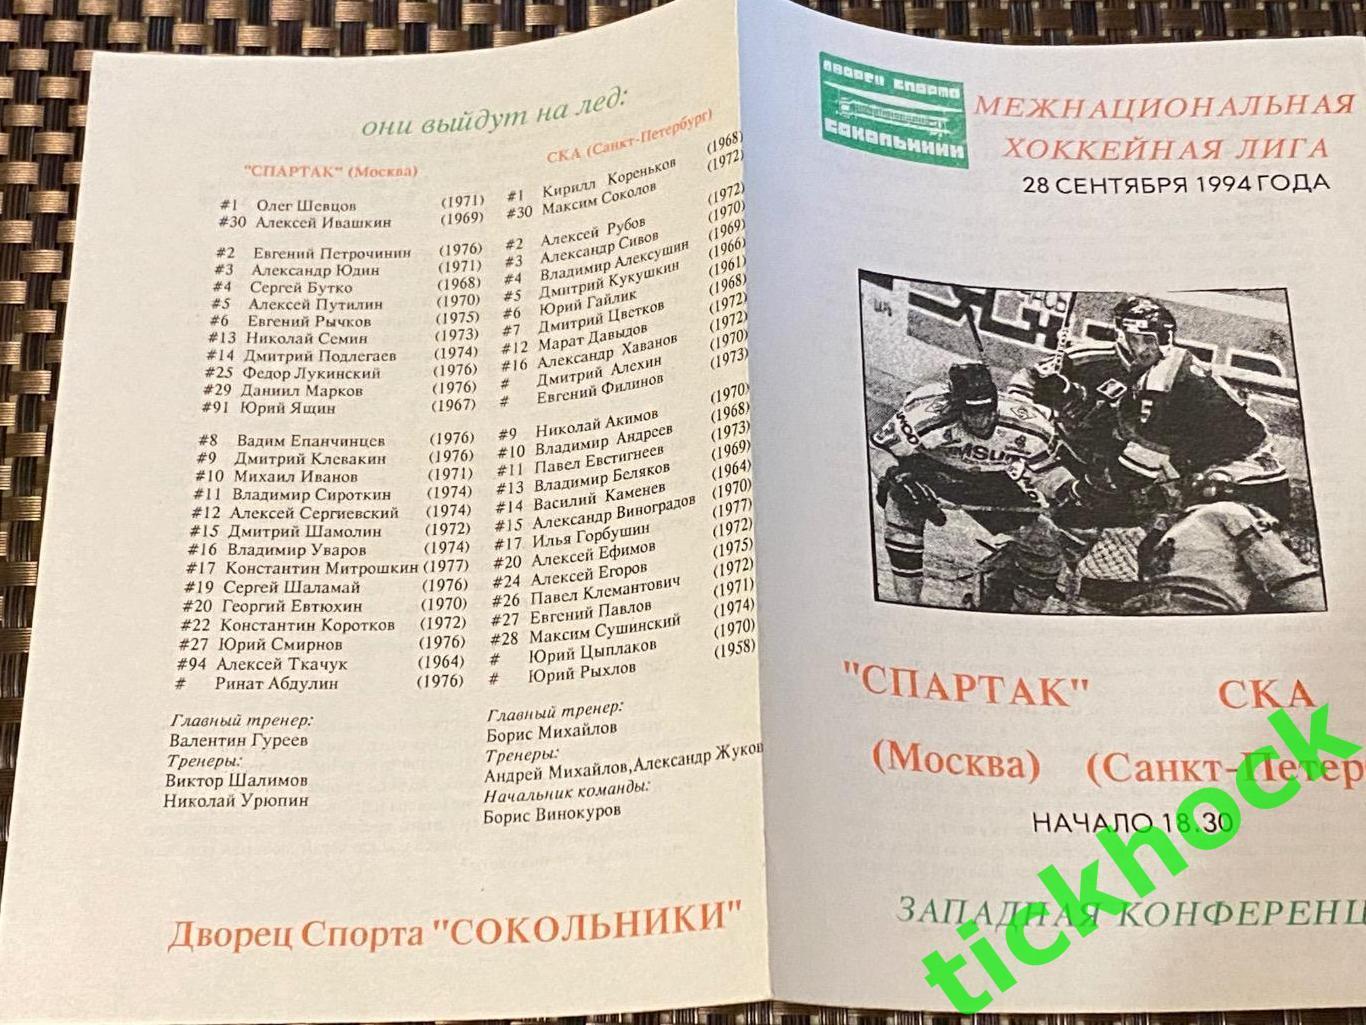 ХК Спартак Москва - ХК СКА Санкт-Петербург 28.09.1994 программа --SY 1